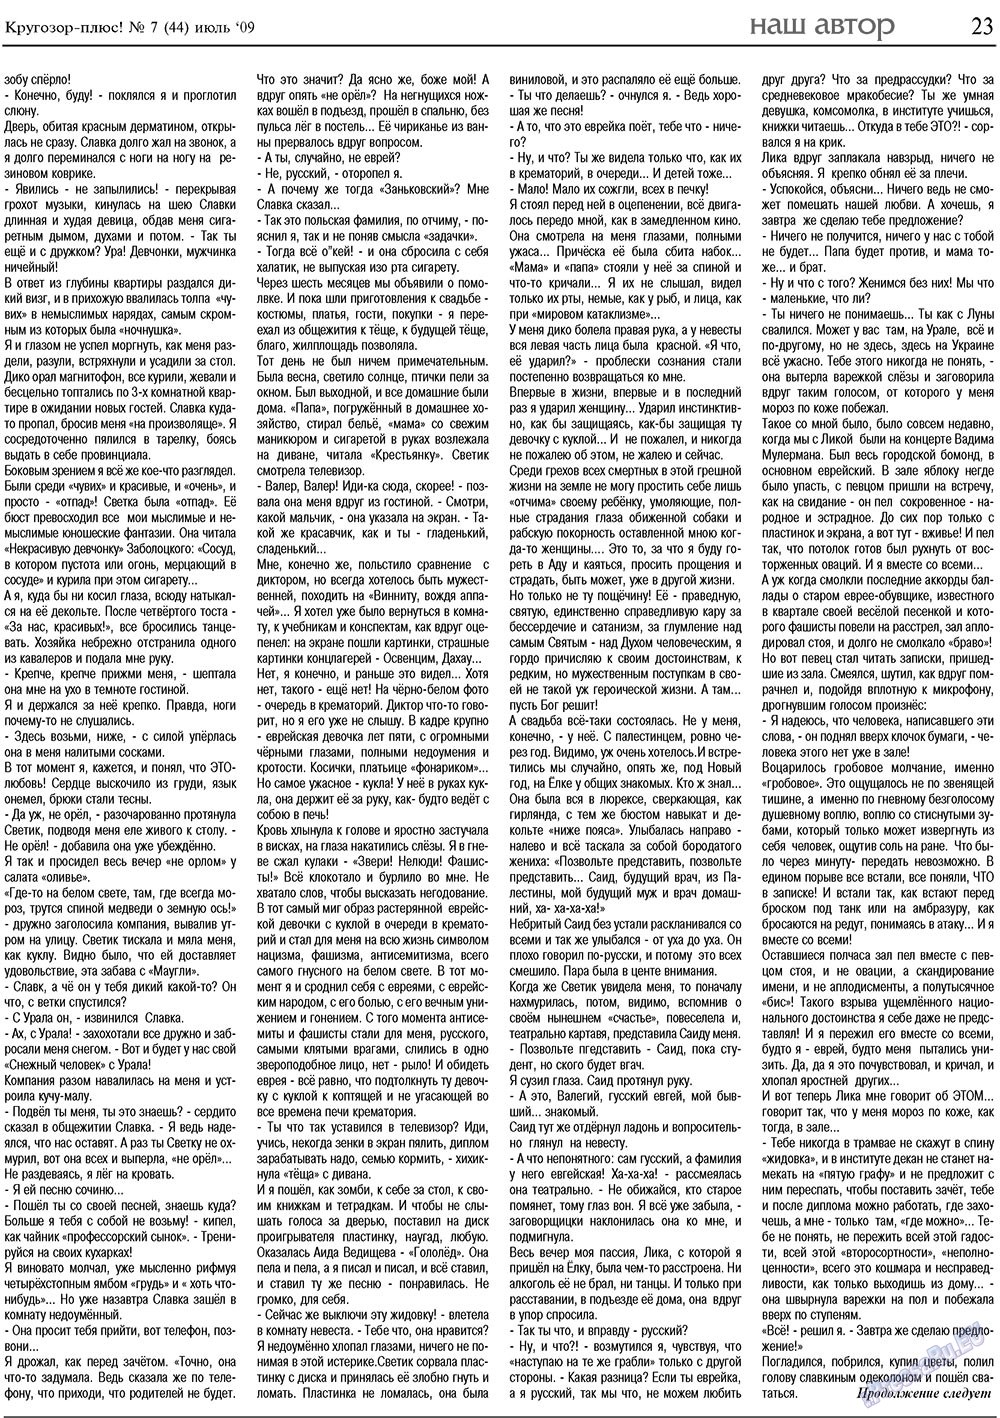 Кругозор плюс!, газета. 2009 №7 стр.23